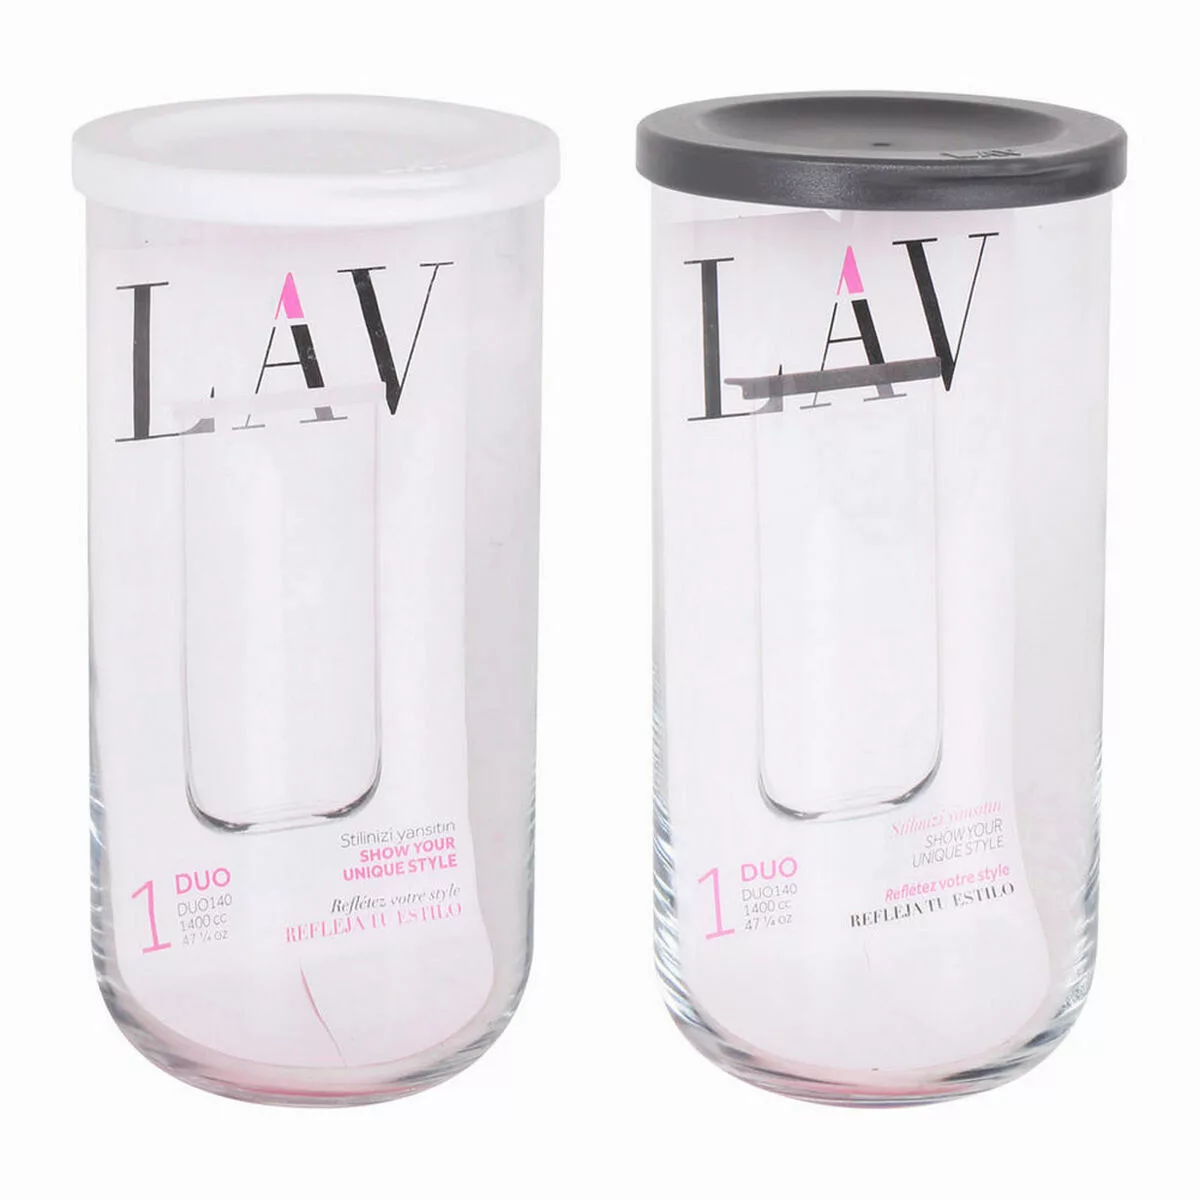 Glasbehälter Lav Duo 1,4 L (10 X 21 Cm) günstig online kaufen